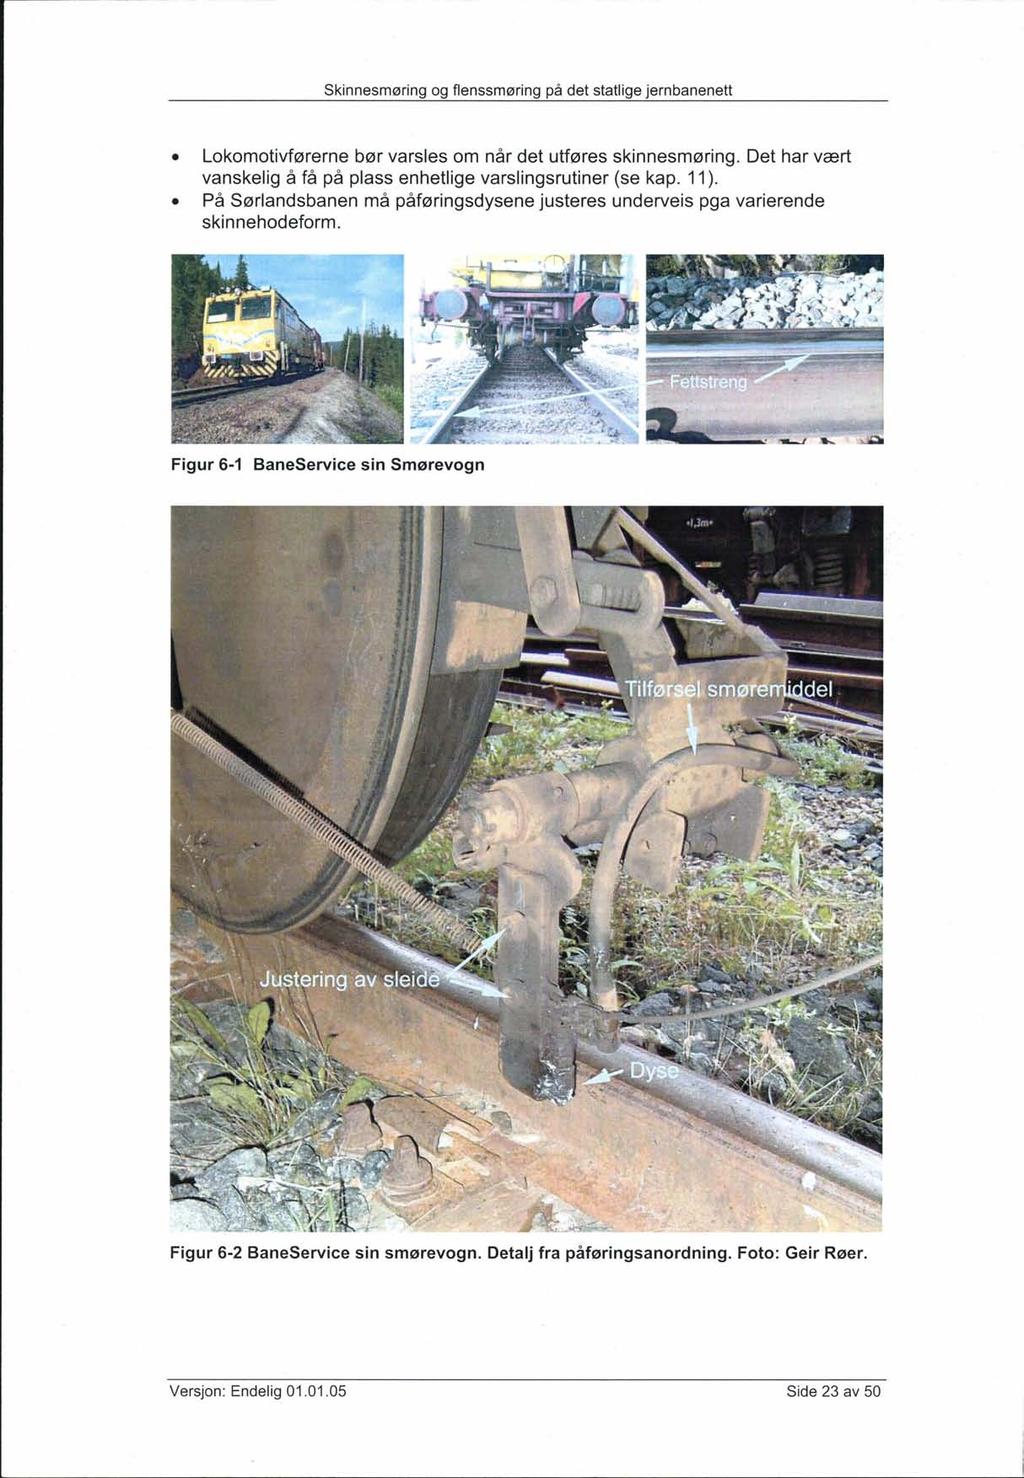 Skinnesmøring og flenssmøring på det statlige jernbanenett Lokomotivførerne bør varsles om når det utføres skinnesmøring. Det har vært vanskelig å få på plass enhetlige varslingsrutiner (se kap. 11).